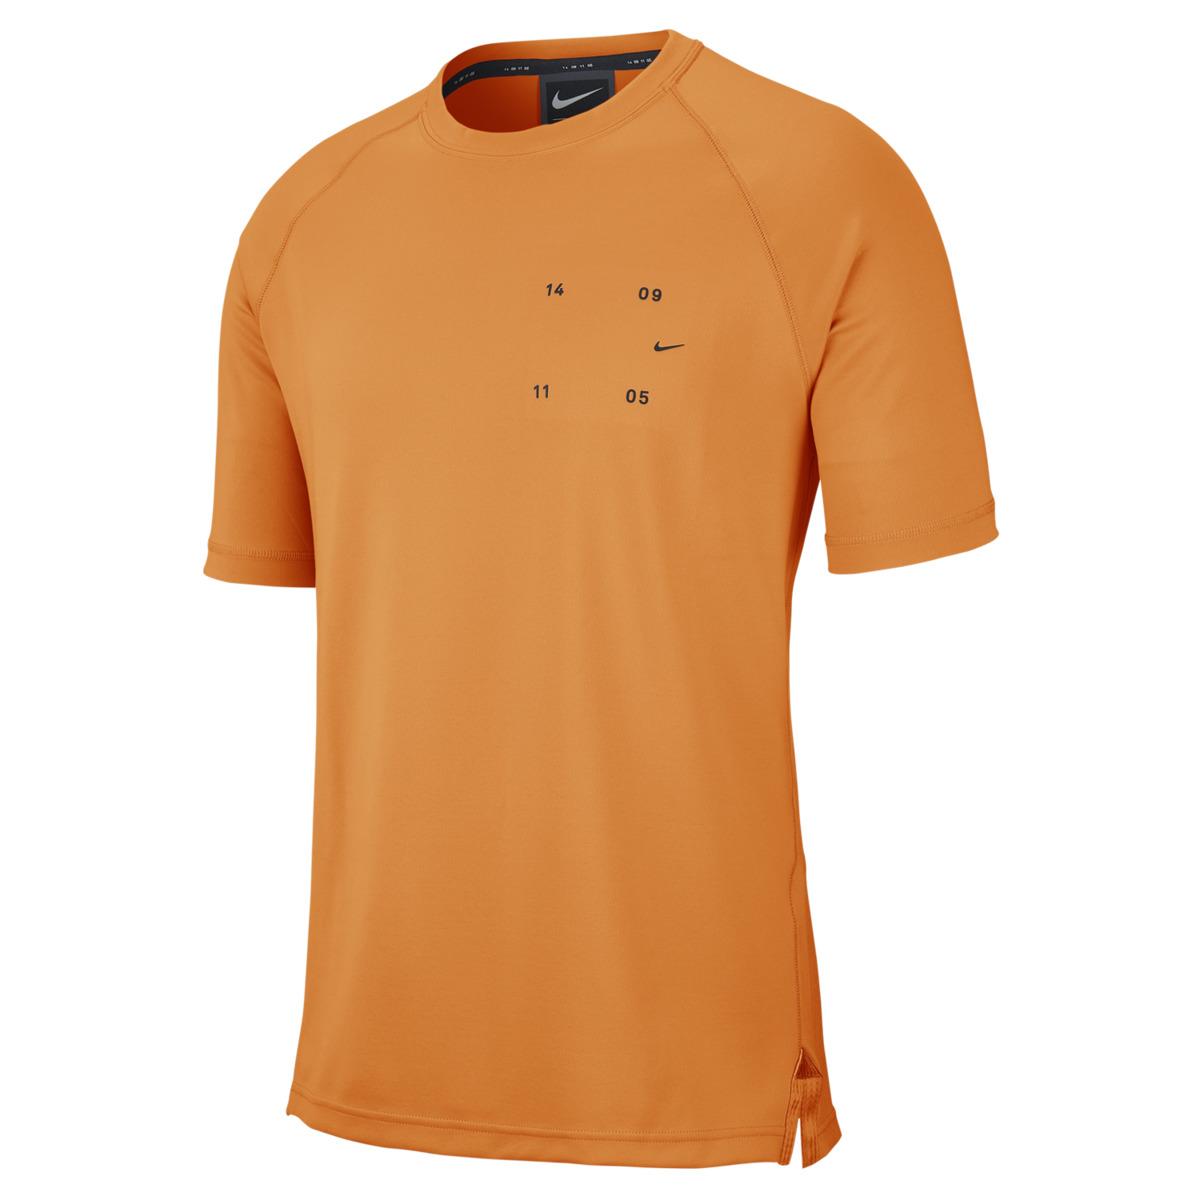 Nike Synthetic Sportswear Tech Pack T-shirt in Orange for Men - Lyst